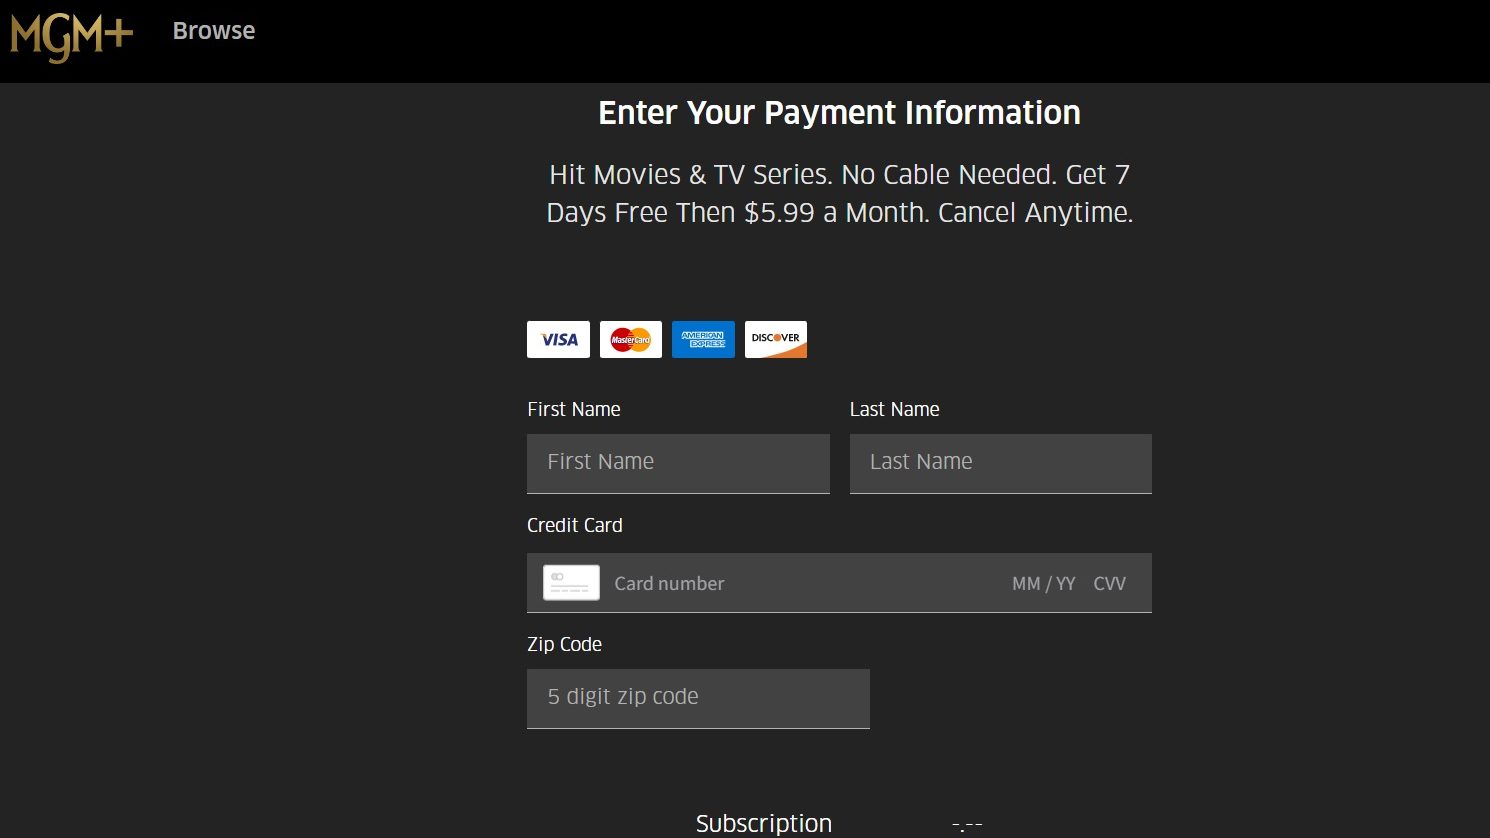 Captura de tela do MGM+ da página de informações de pagamento, com caixas para nome, número do cartão de crédito e código postal